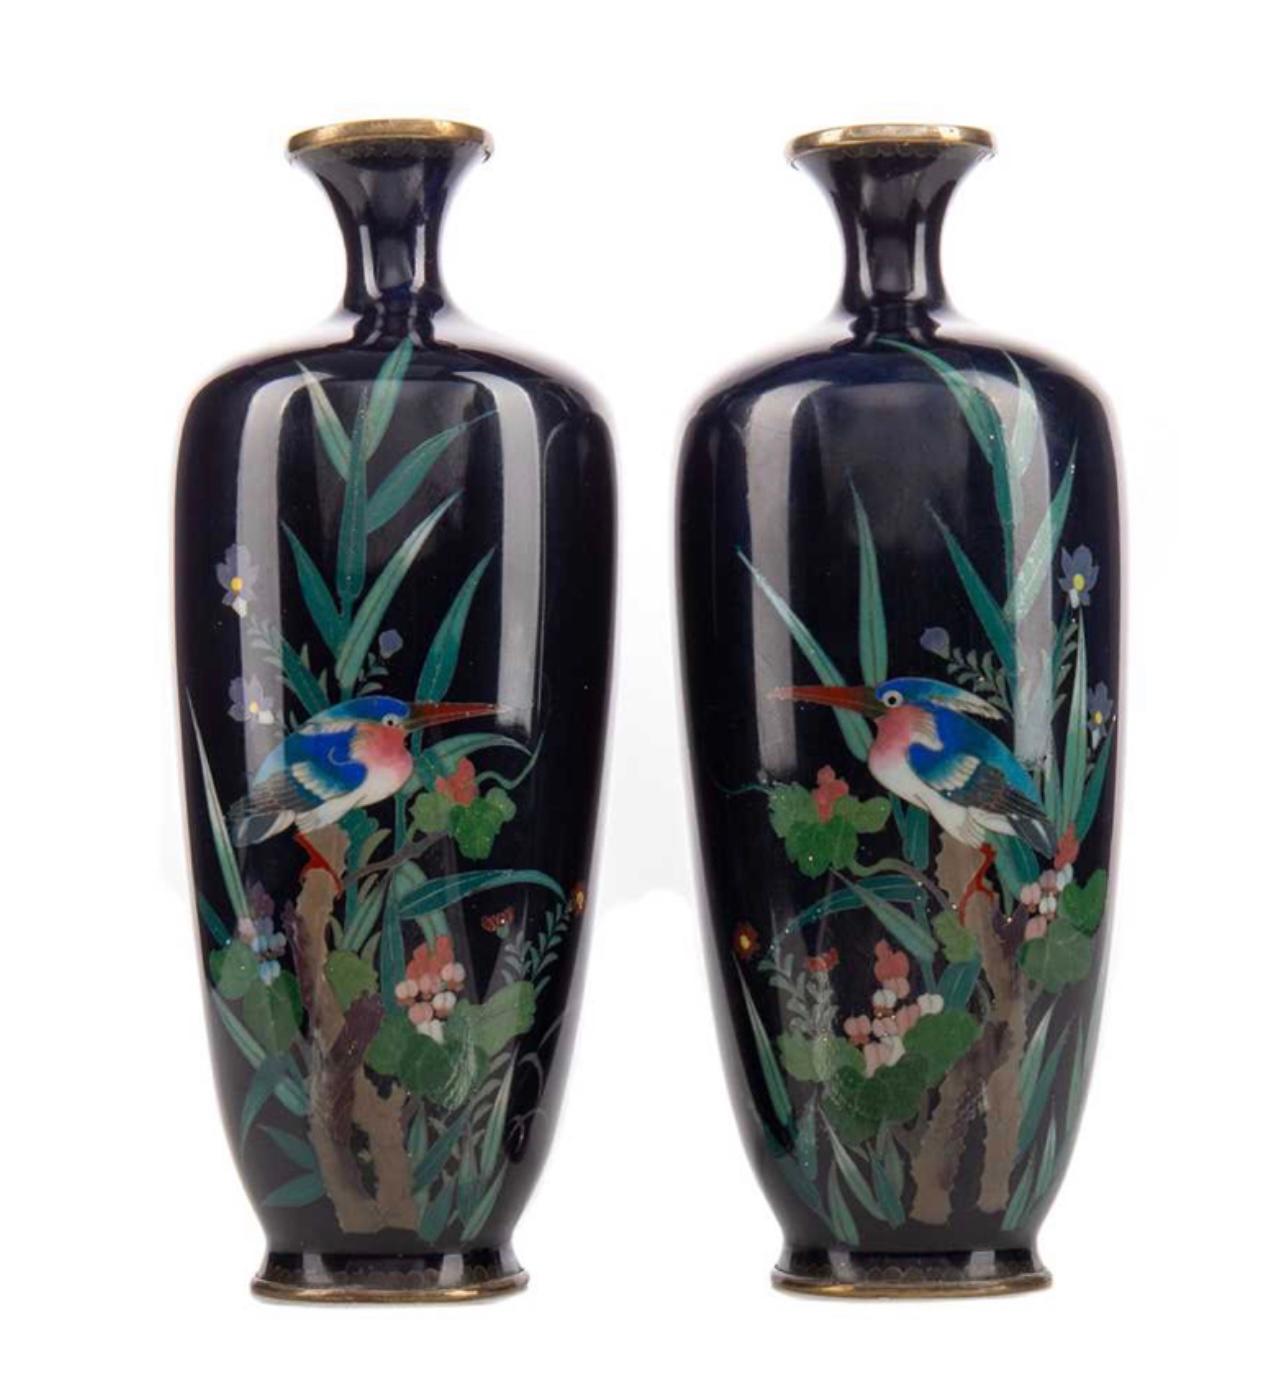 Ein feines Paar gegenüberliegender japanischer Cloisonne-Email-Vasen. 19. Jahrhundert.

GEGENÜBERLIEGENDES PAAR JAPANISCHER CLOISONNE-EMAILLE-VASEN, Meiji-Periode (1868-1912), aus Silberdraht gearbeitet, verziert mit einem Kingfisher inmitten von